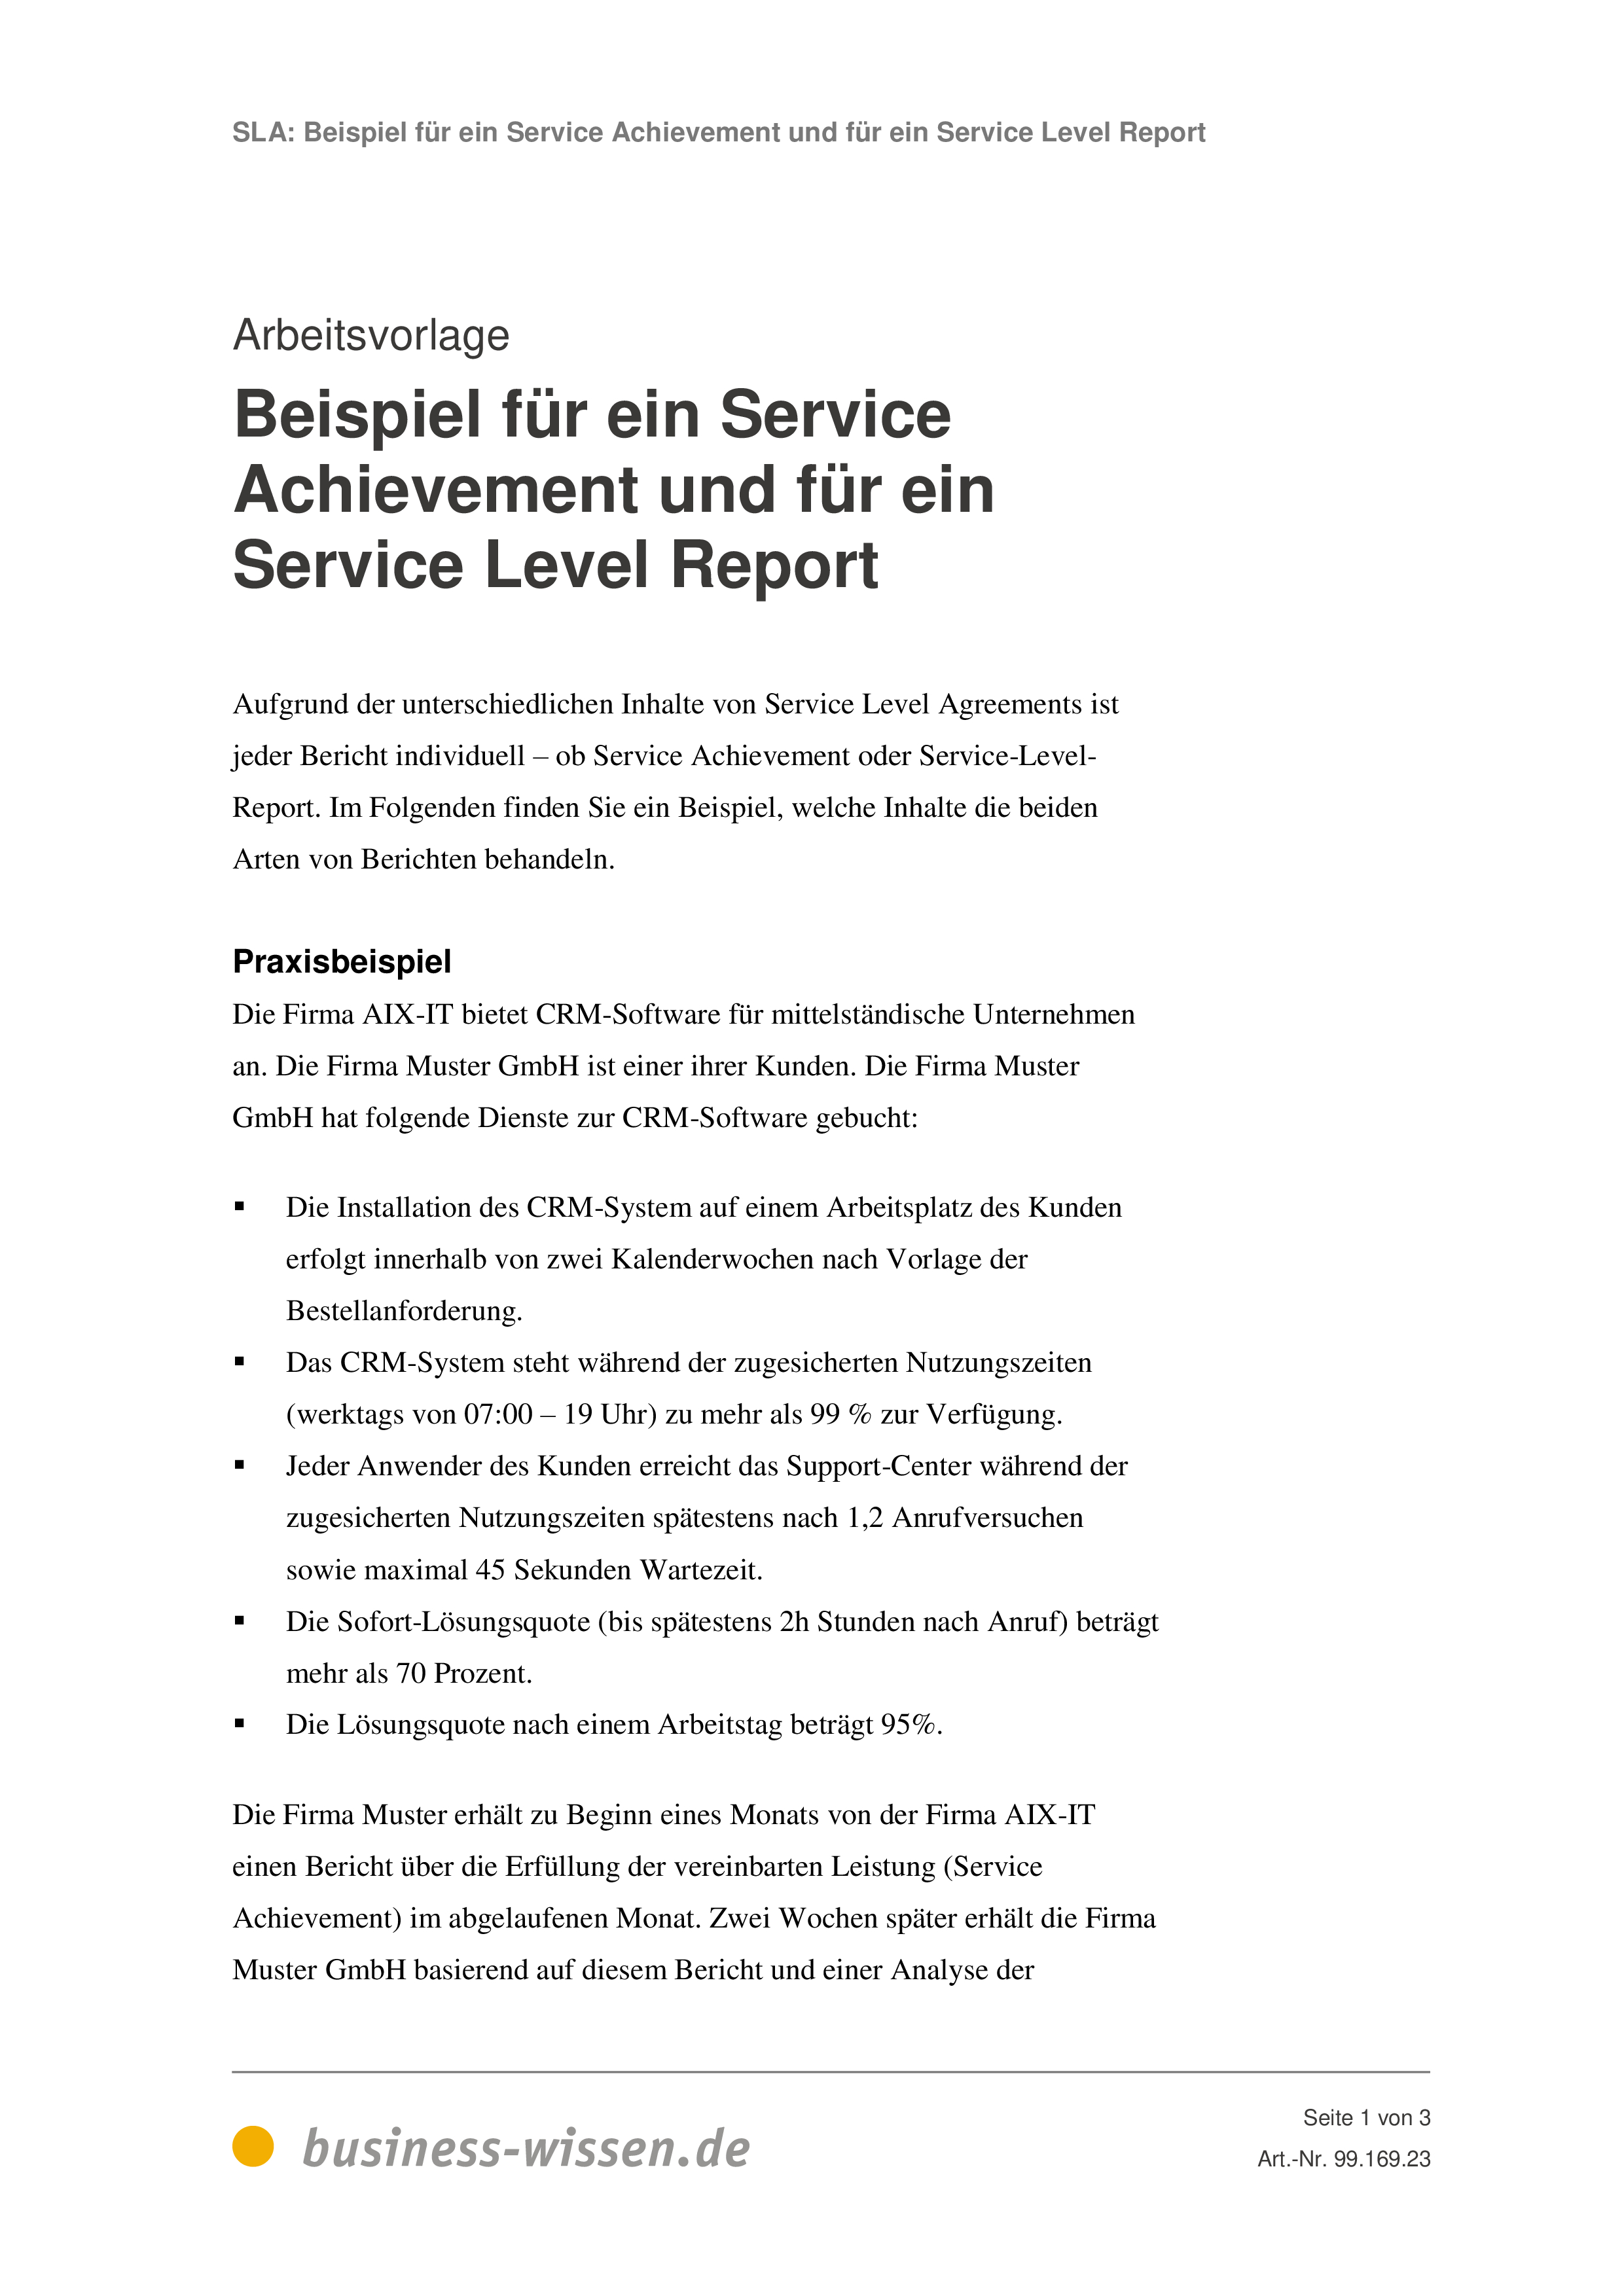 It Service Level Agreement Service Level Agreement Sla Management Handbuch Business Wissende